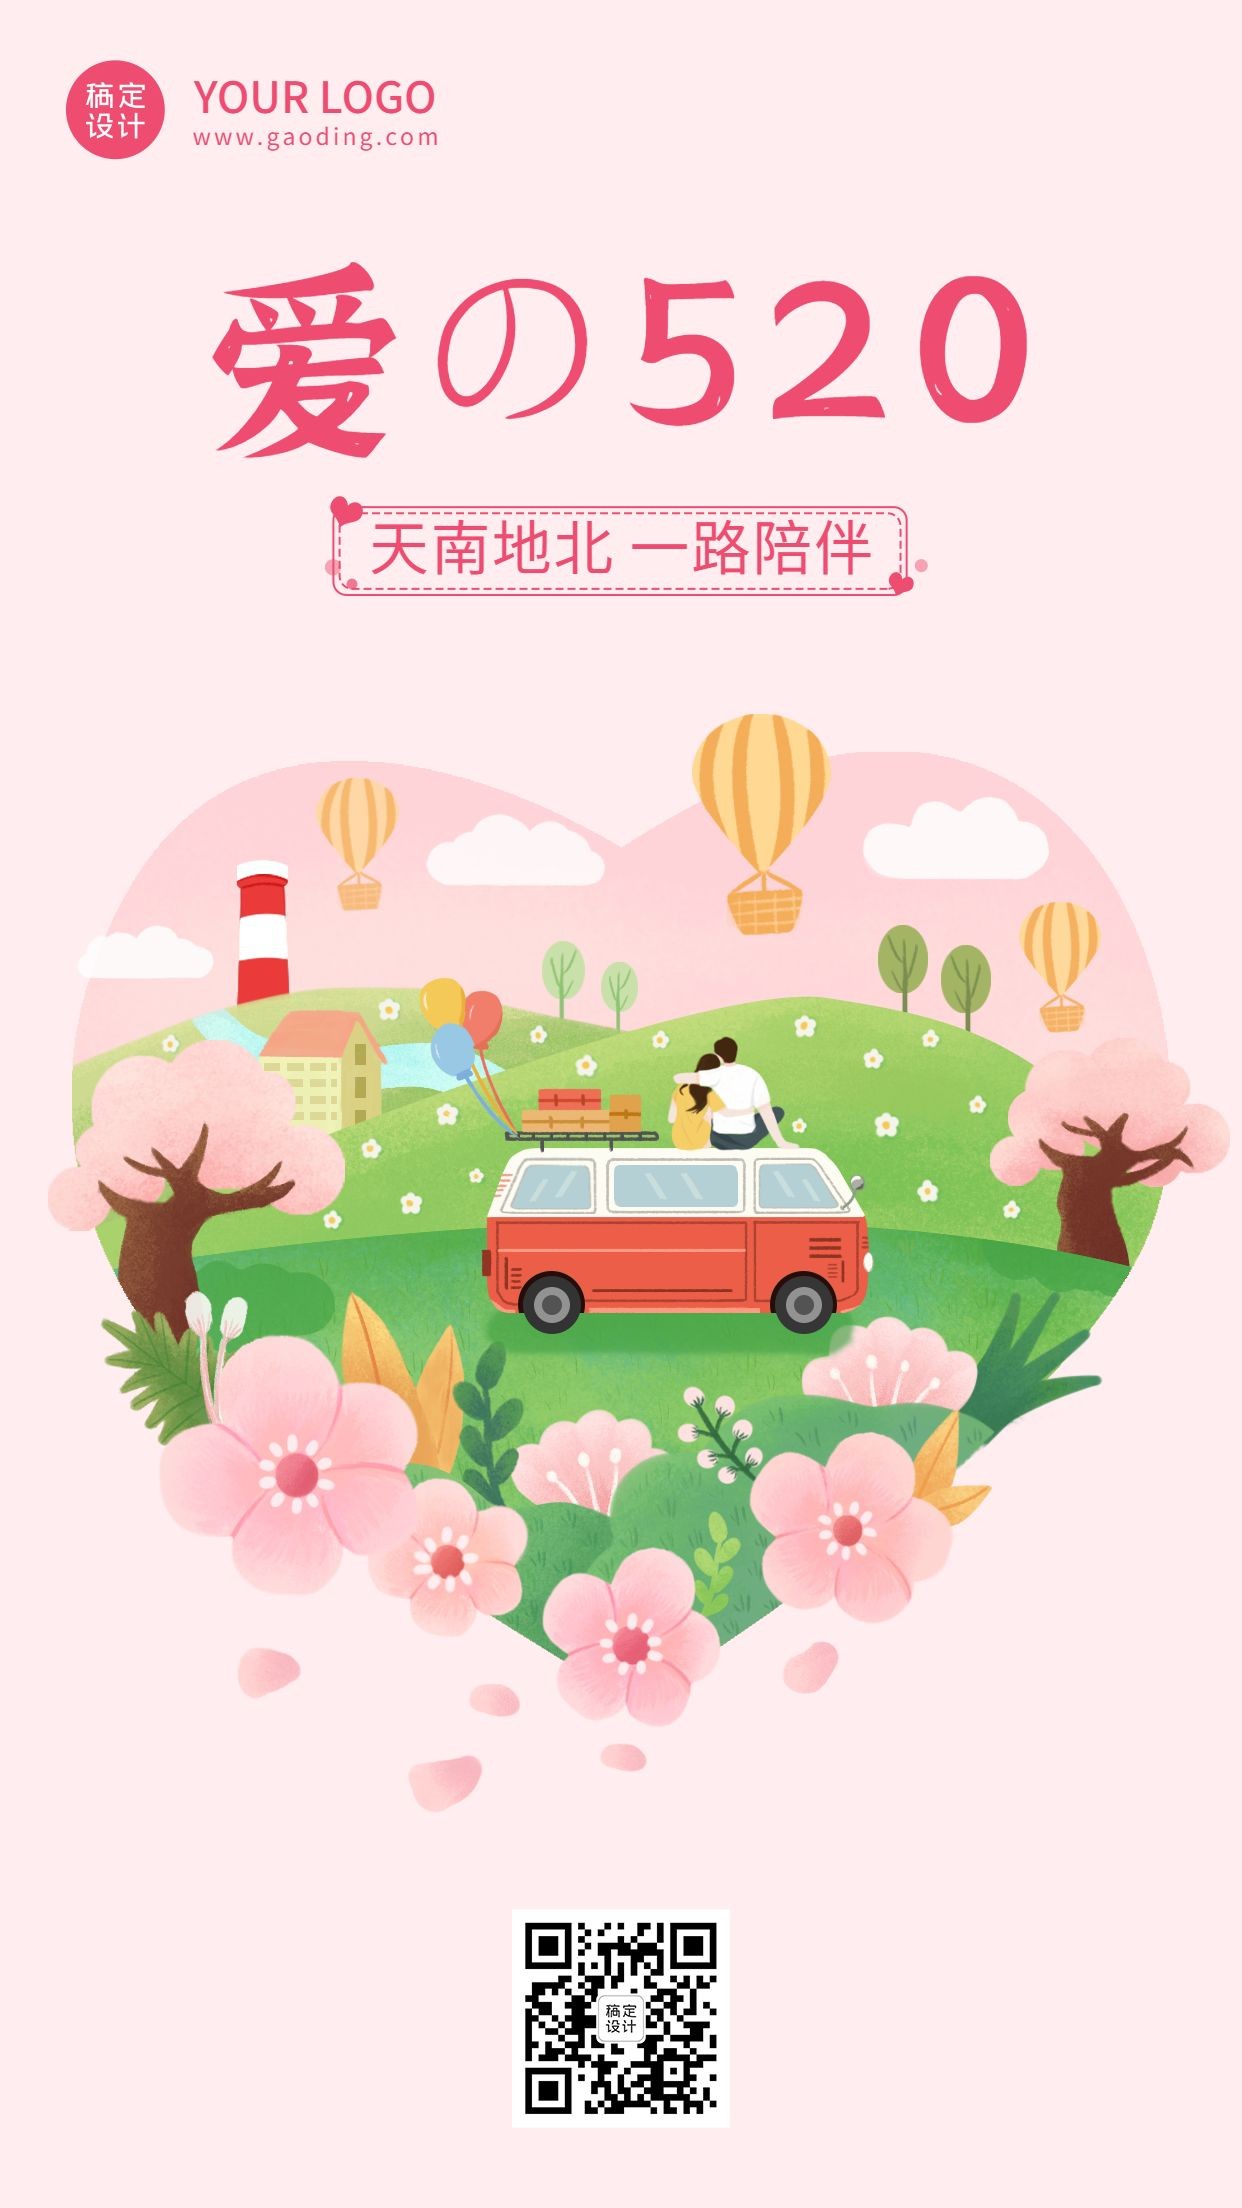 520情人节节日祝福插画手机海报